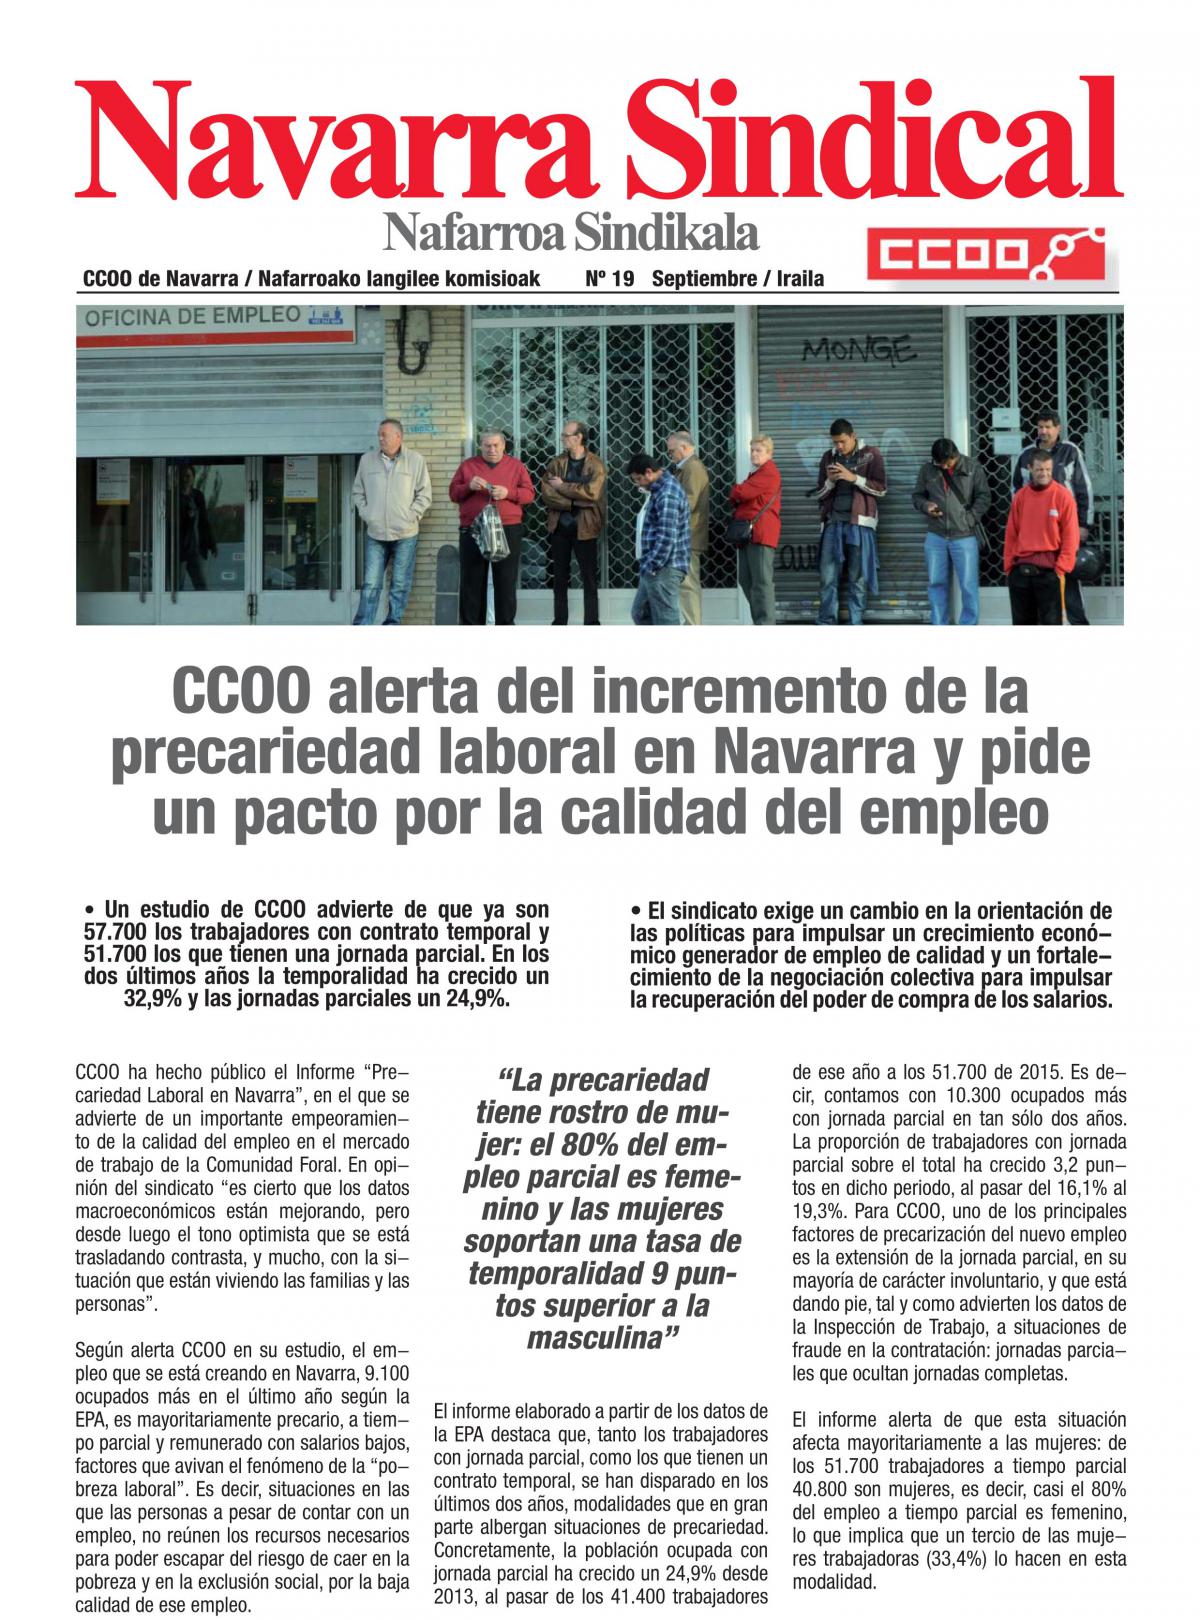 CCOO alerta del incremento de la precariedad laboral en Navarra y pide un pacto por la calidad del empleo